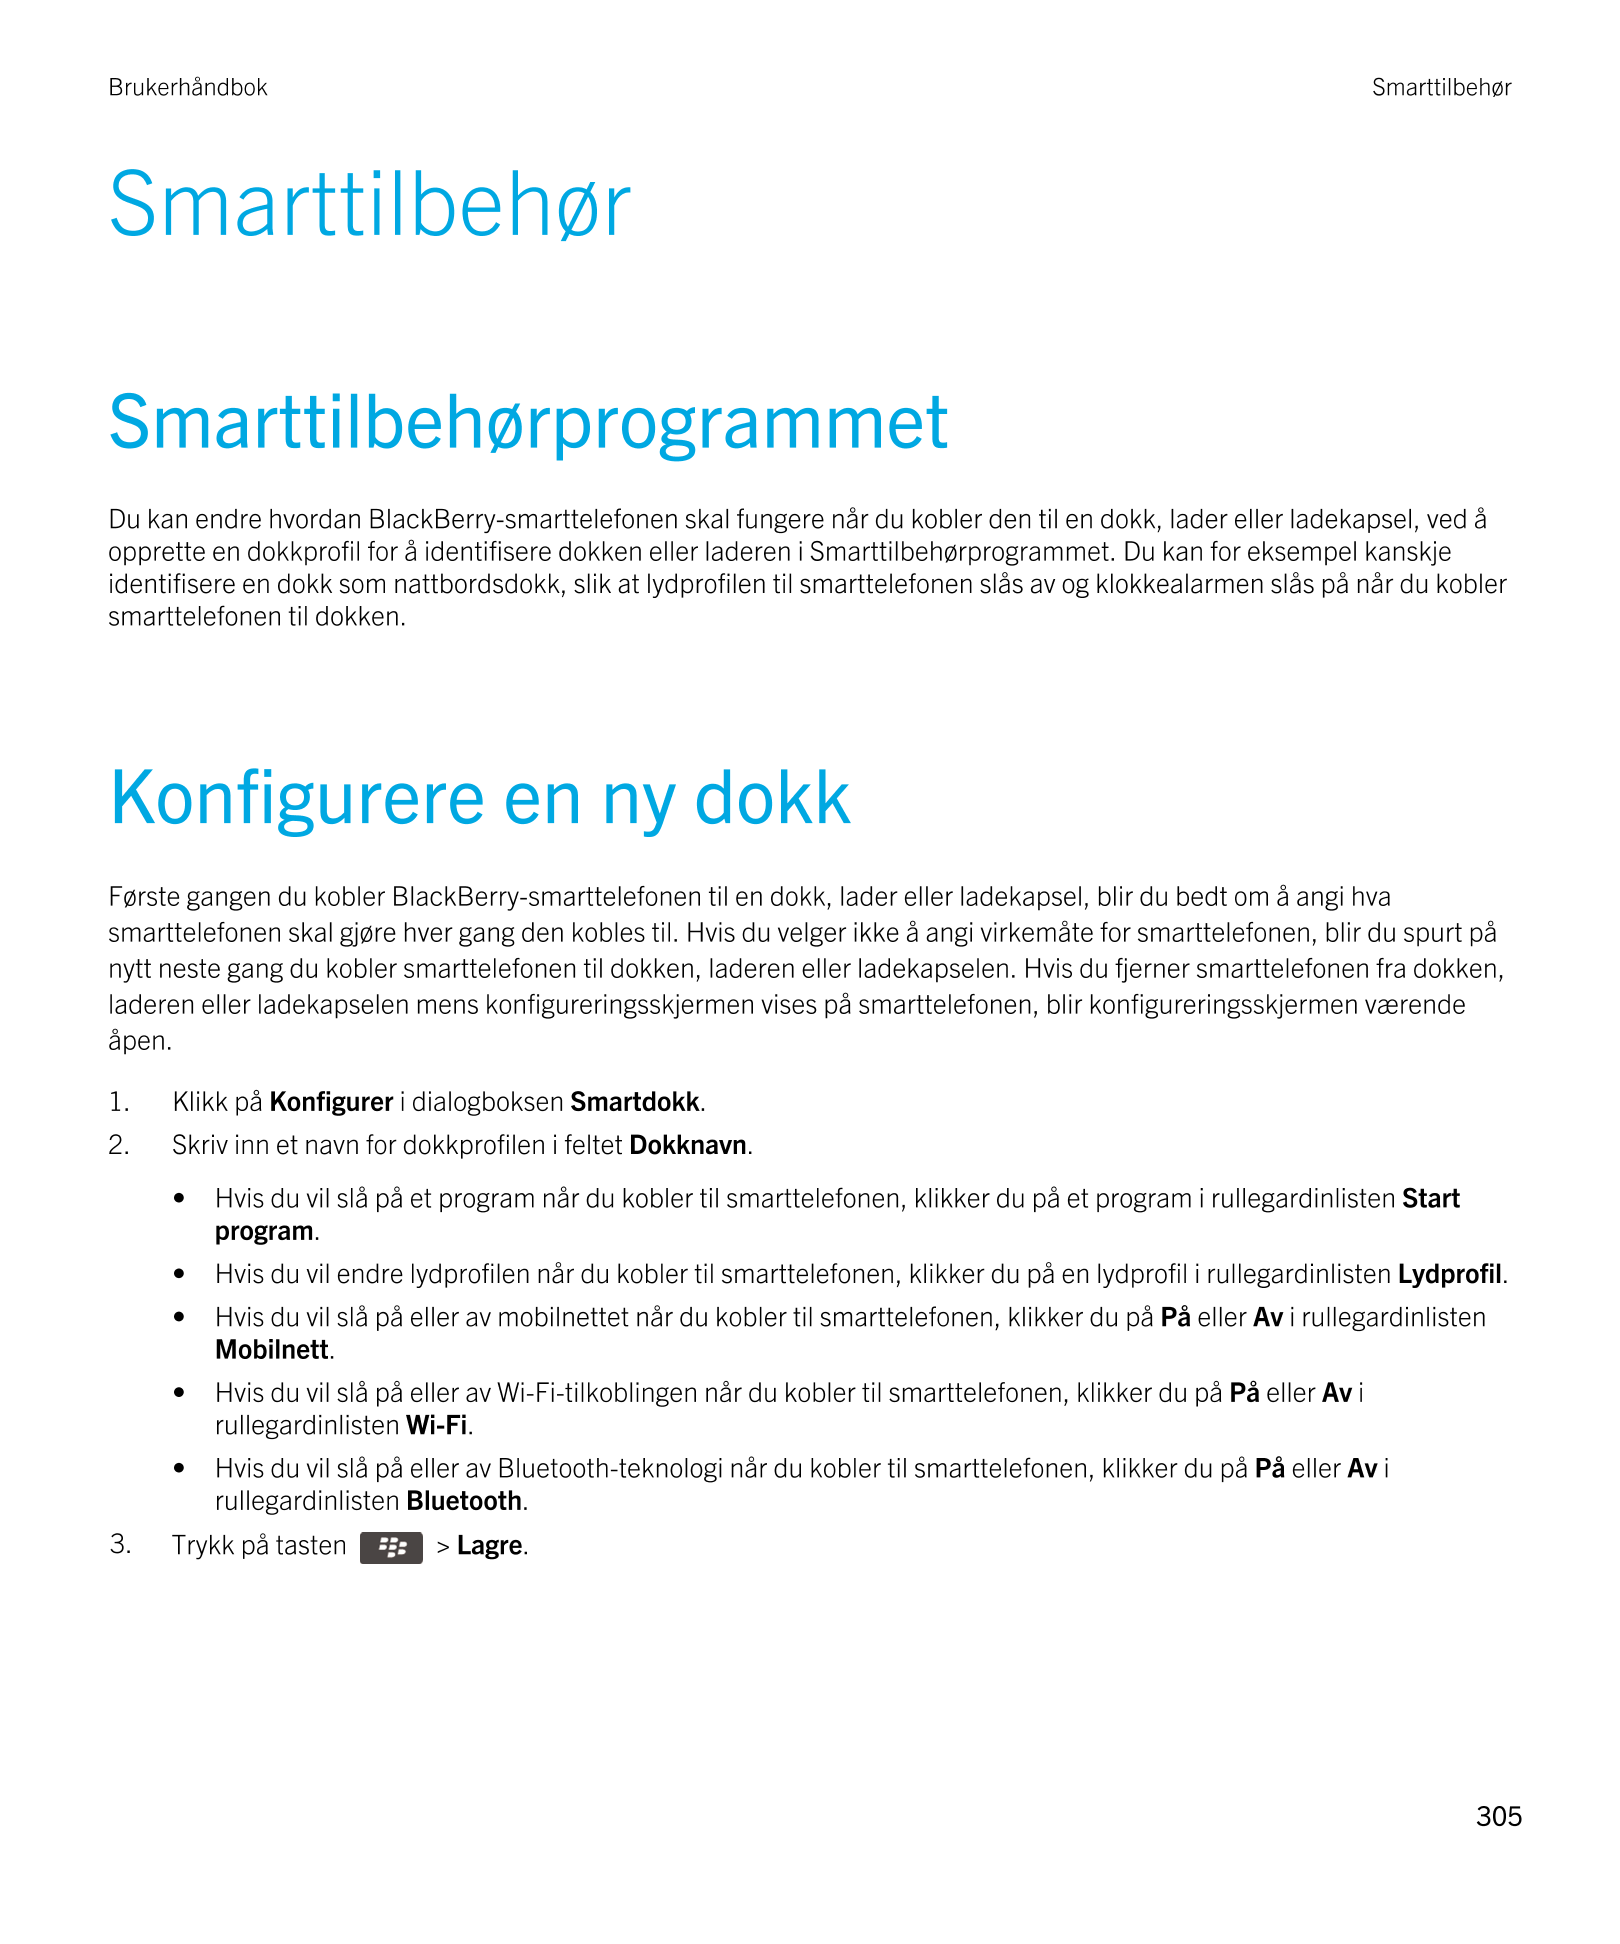 Brukerhåndbok Smarttilbehør
Smarttilbehør
Smarttilbehørprogrammet
Du kan endre hvordan  BlackBerry-smarttelefonen skal fungere n